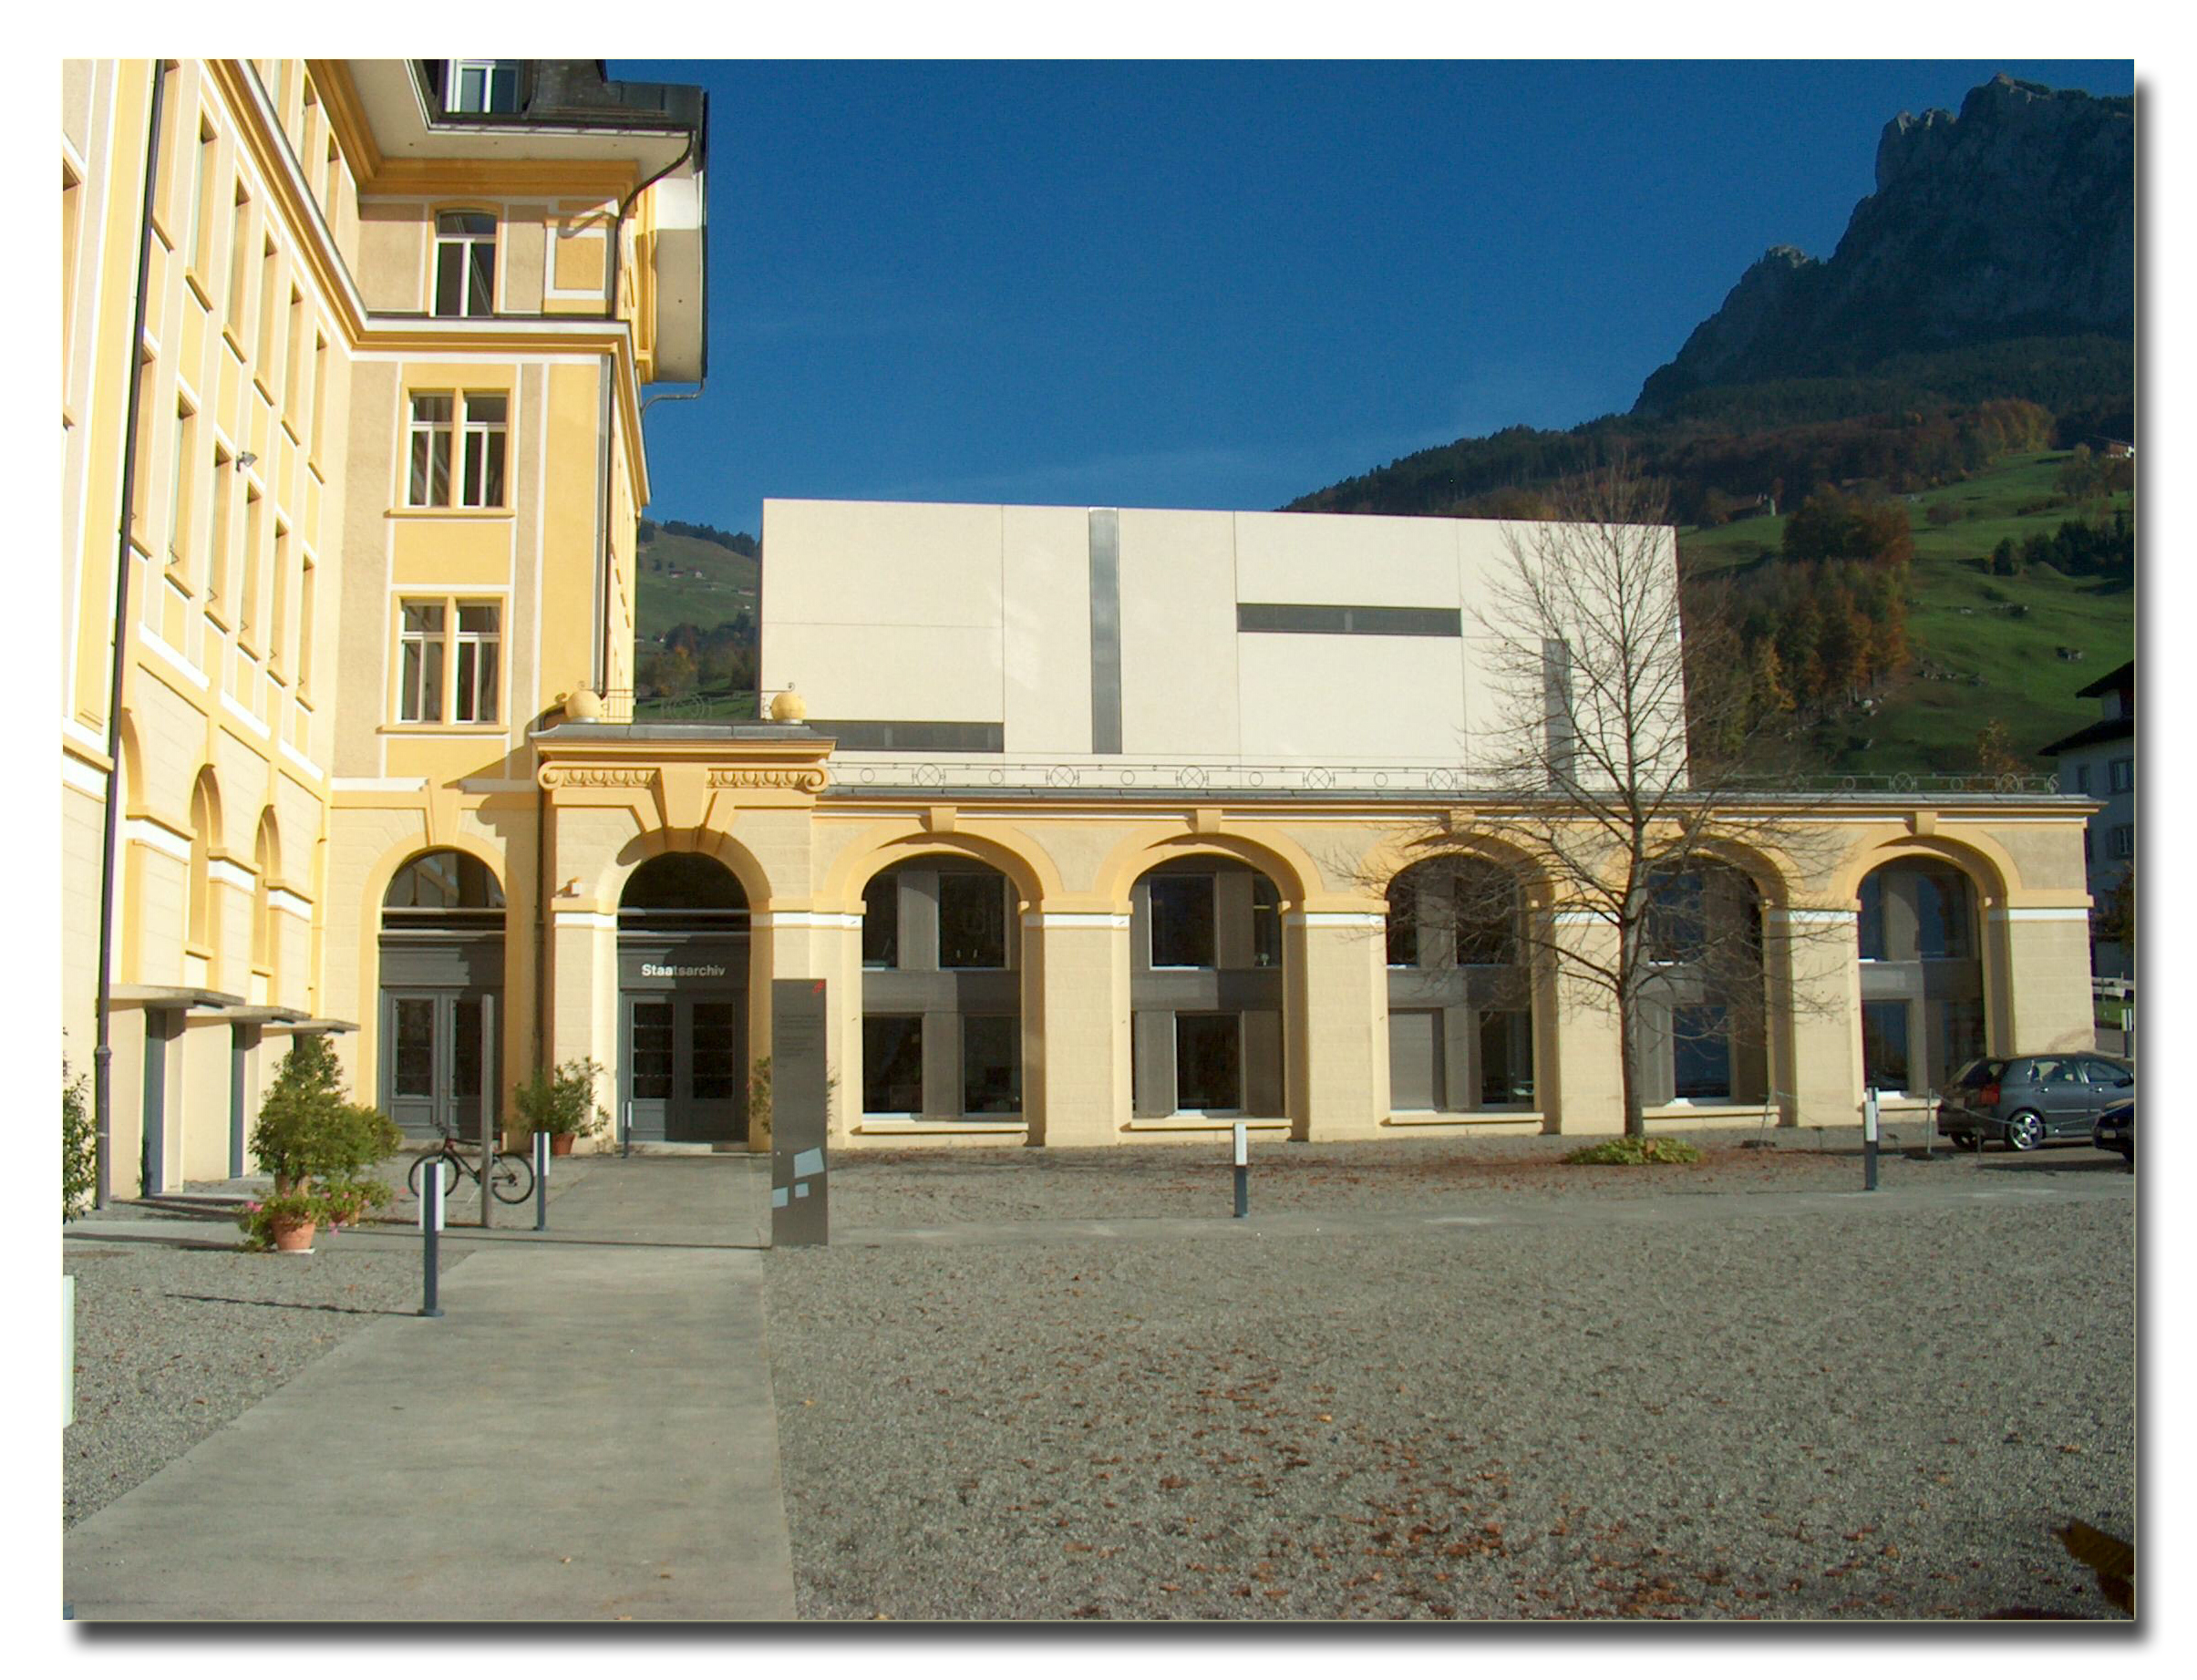 Auf dem Bild ist die Kantonale Denkmalpflege des Kantons Schwyz zu sehen.